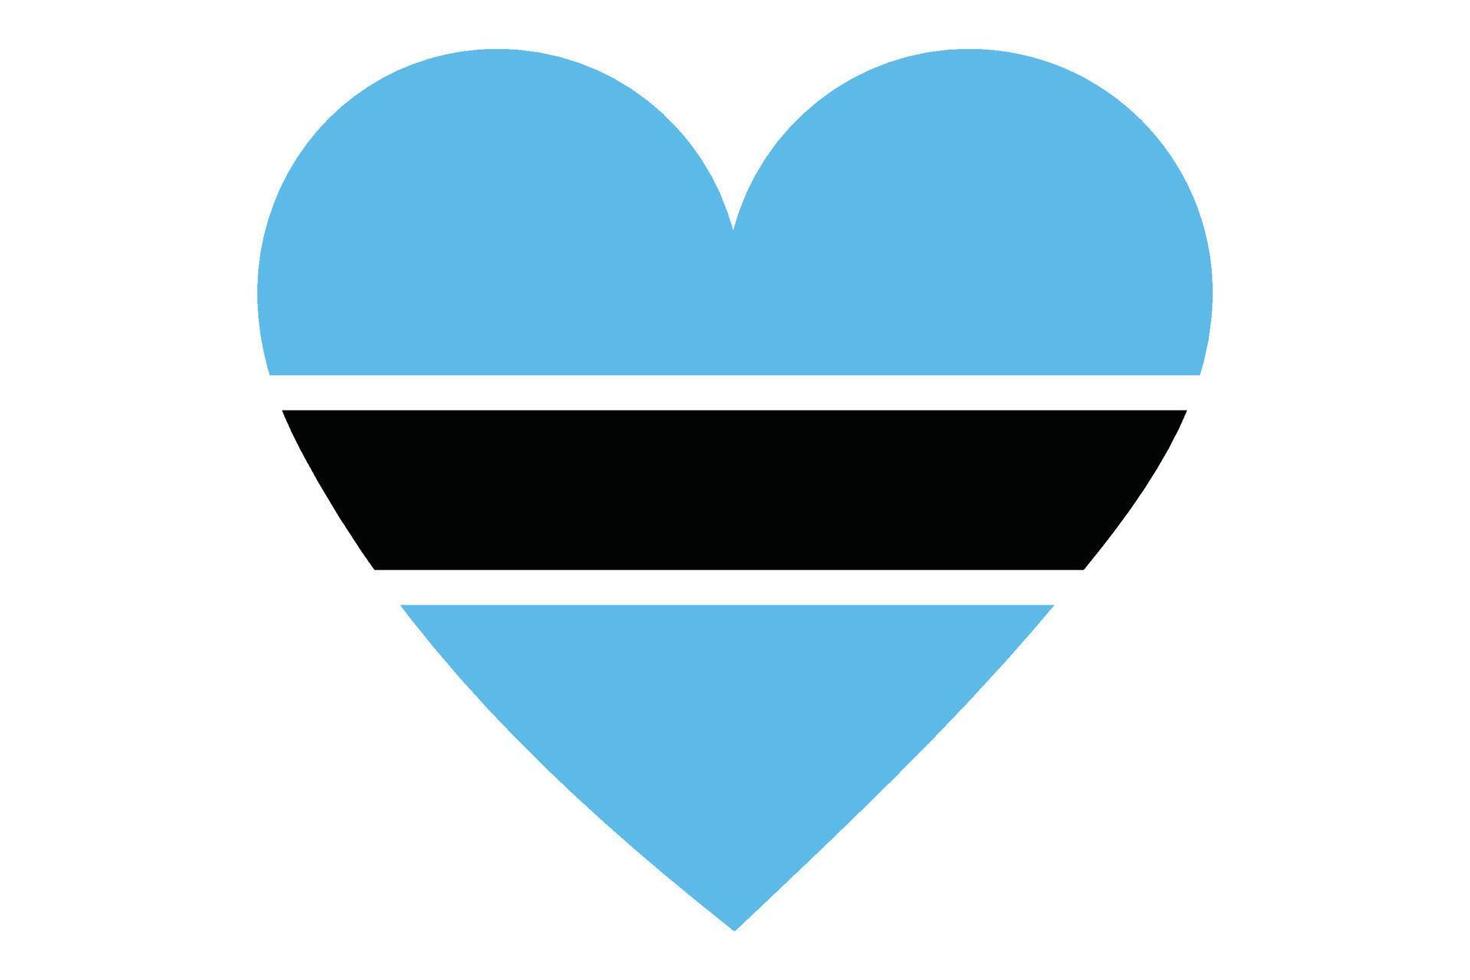 Heart flag vector of Botswana on white background.